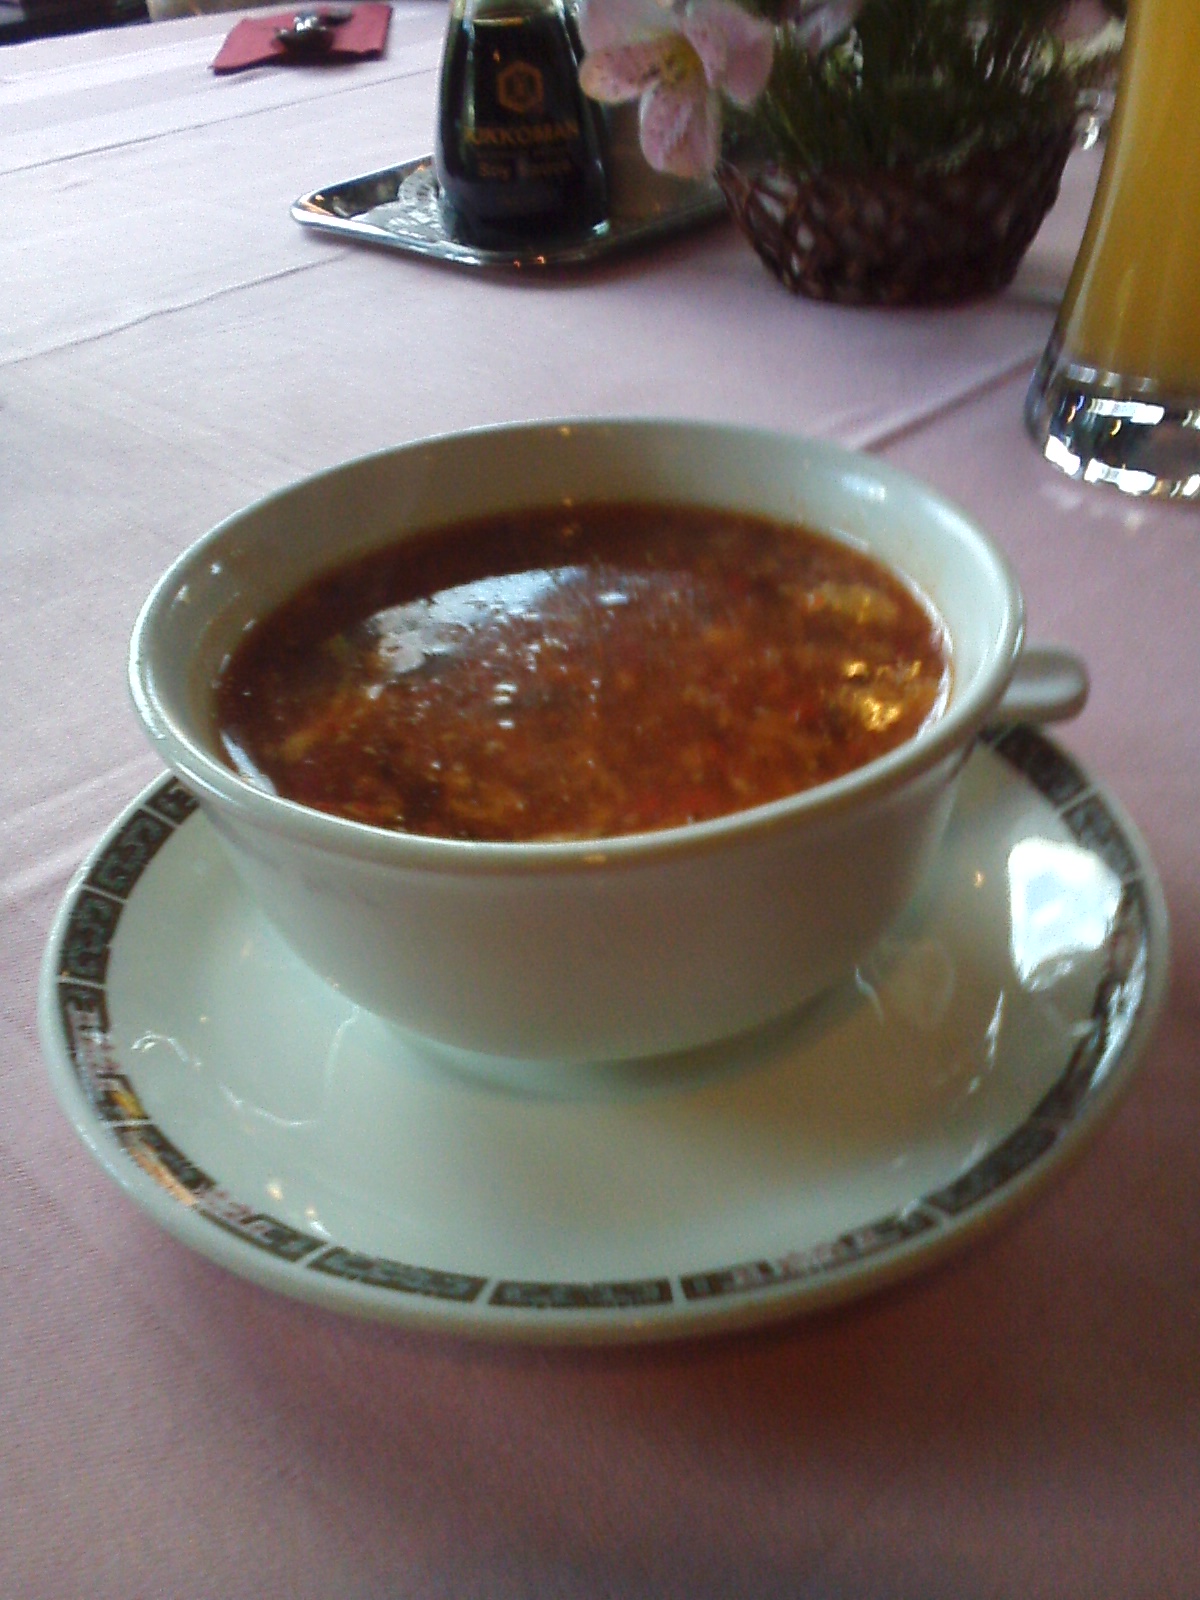 Vorsuppe:
Sauer-Scharf-Suppe